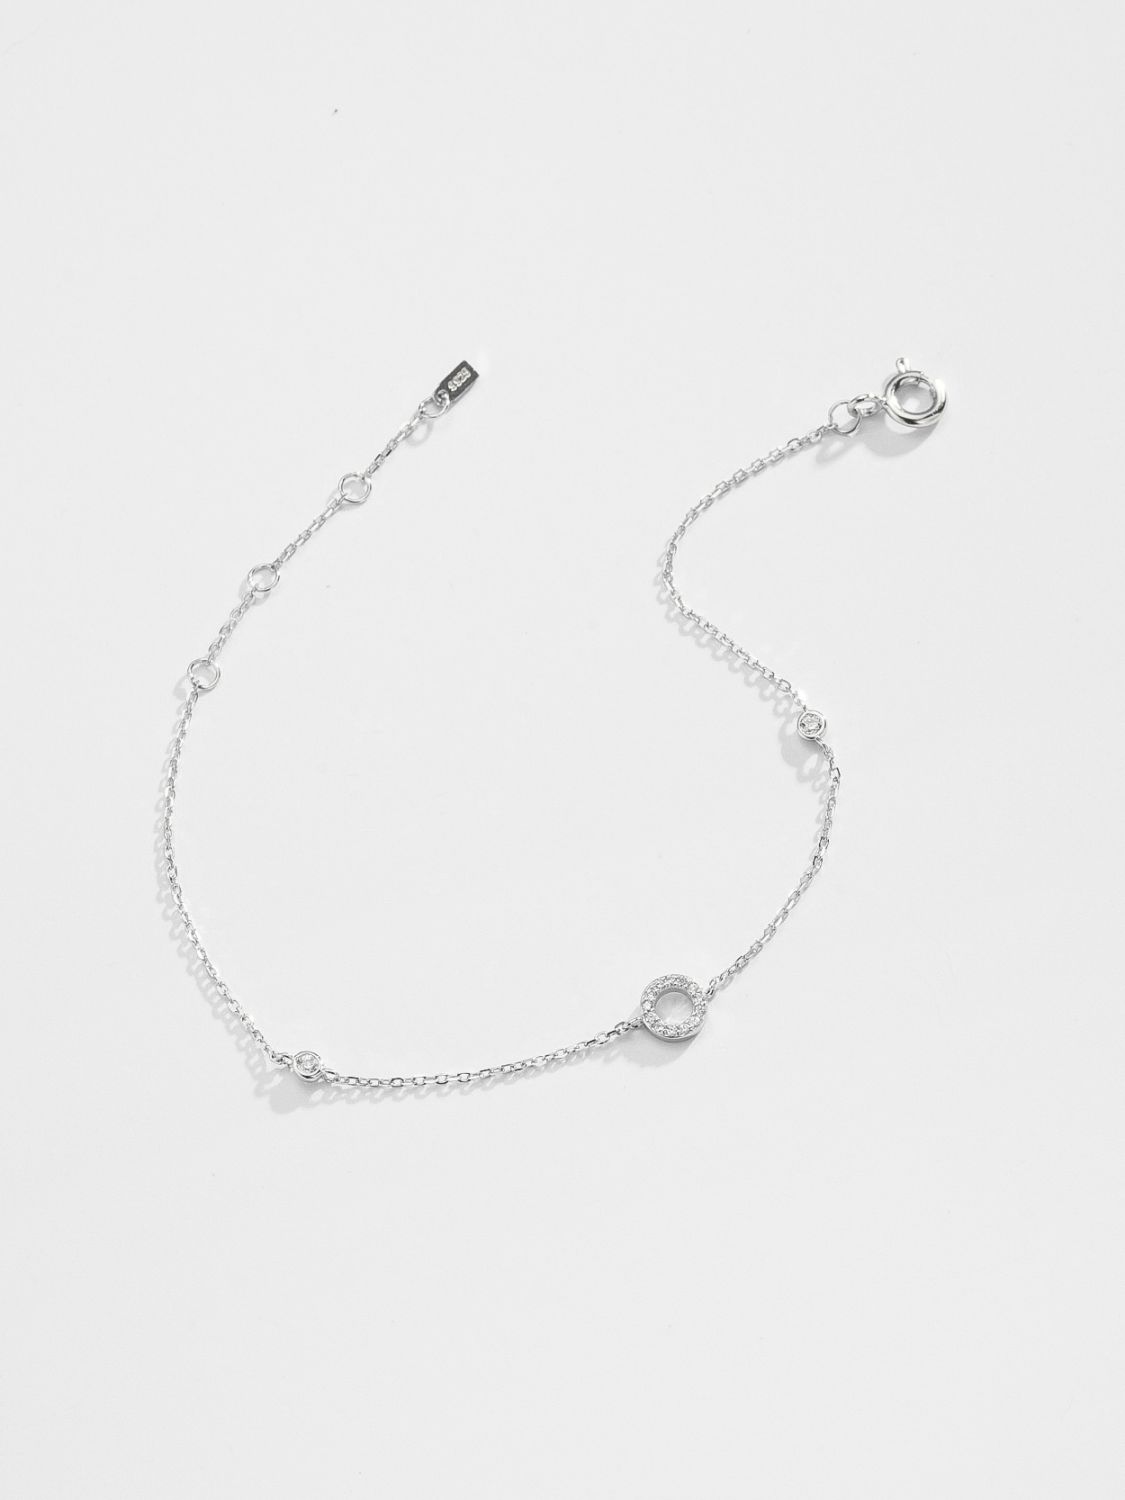 L To P Zircon 925 Sterling Silver Bracelet - Women’s Jewelry - Bracelets - 23 - 2024